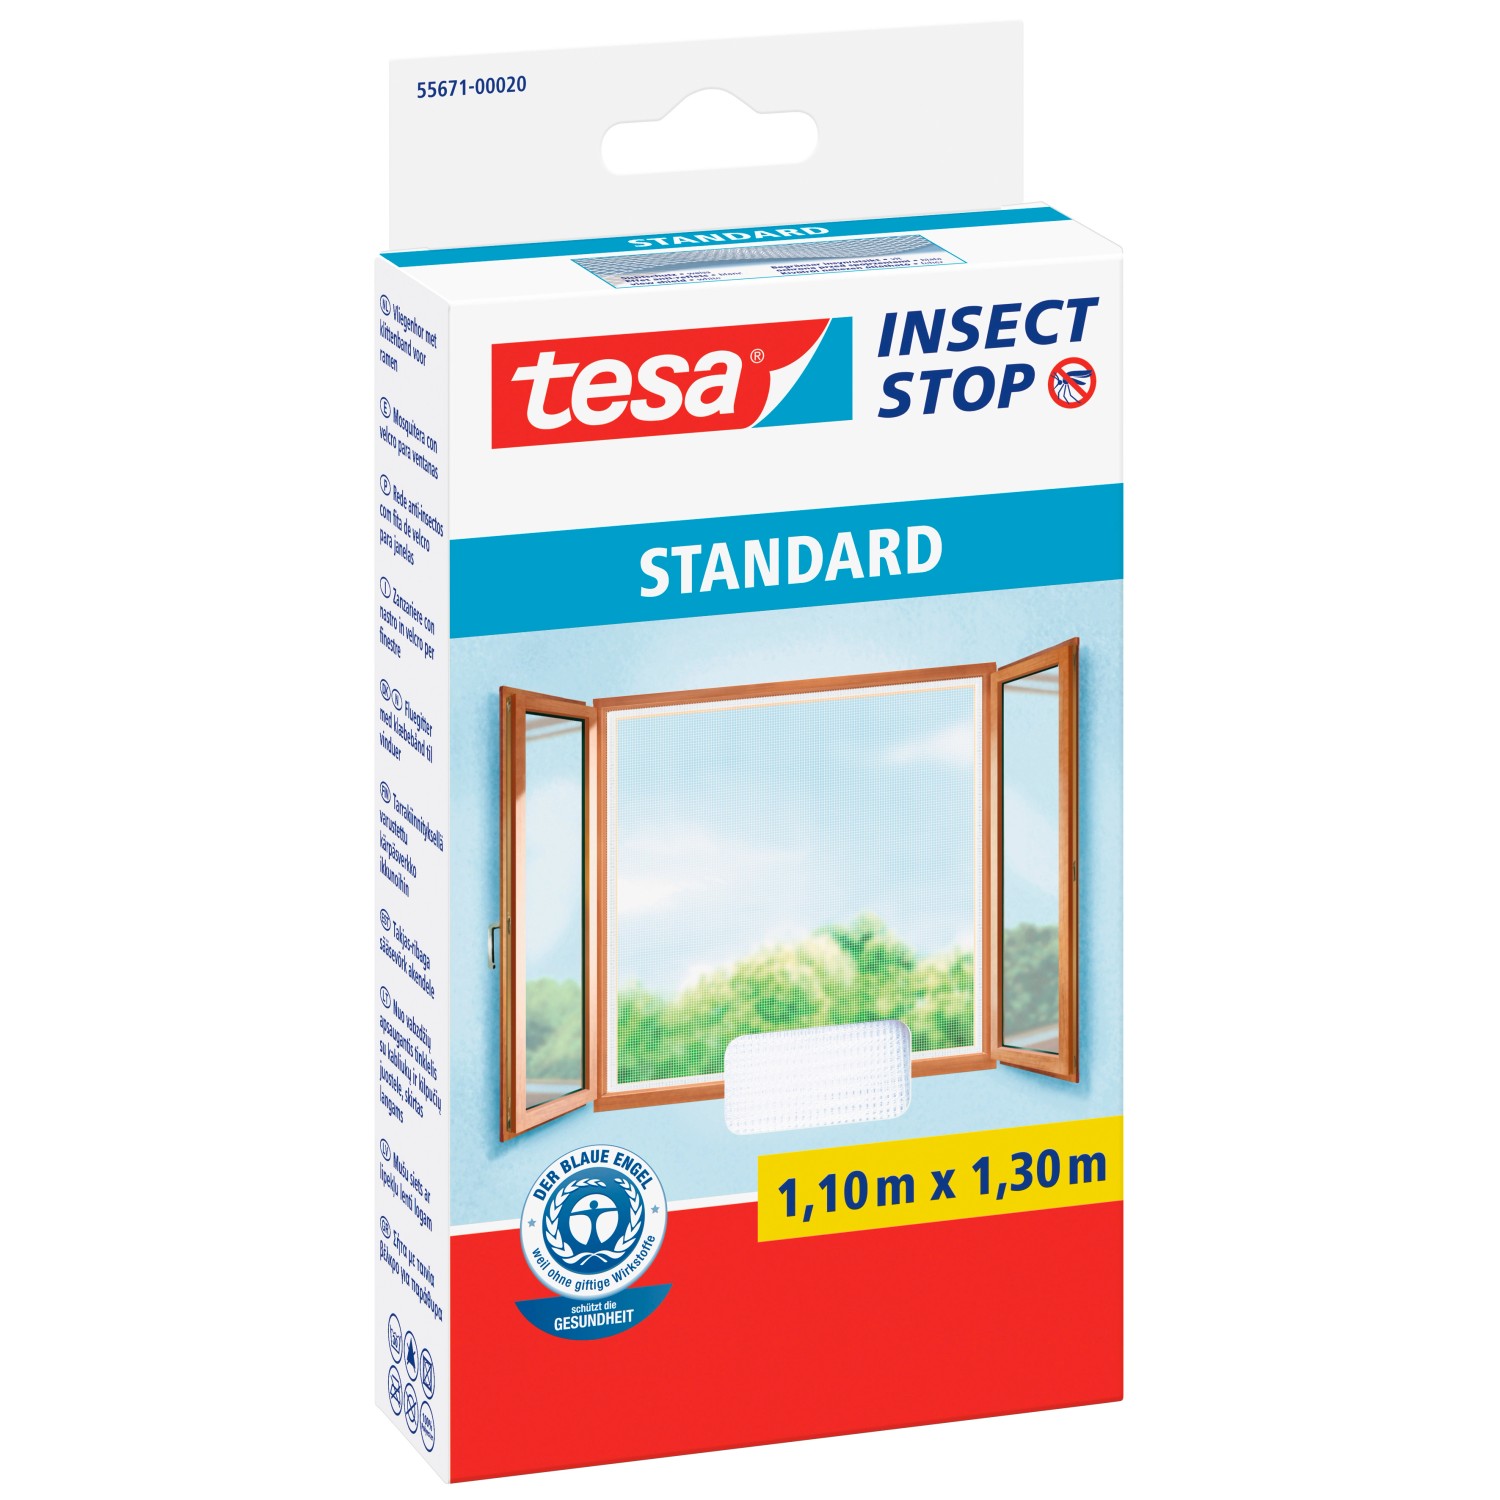 Tesa Insect Stop Fliegengitter Standard mit Klettband 130 cm x 110 cm Weiß